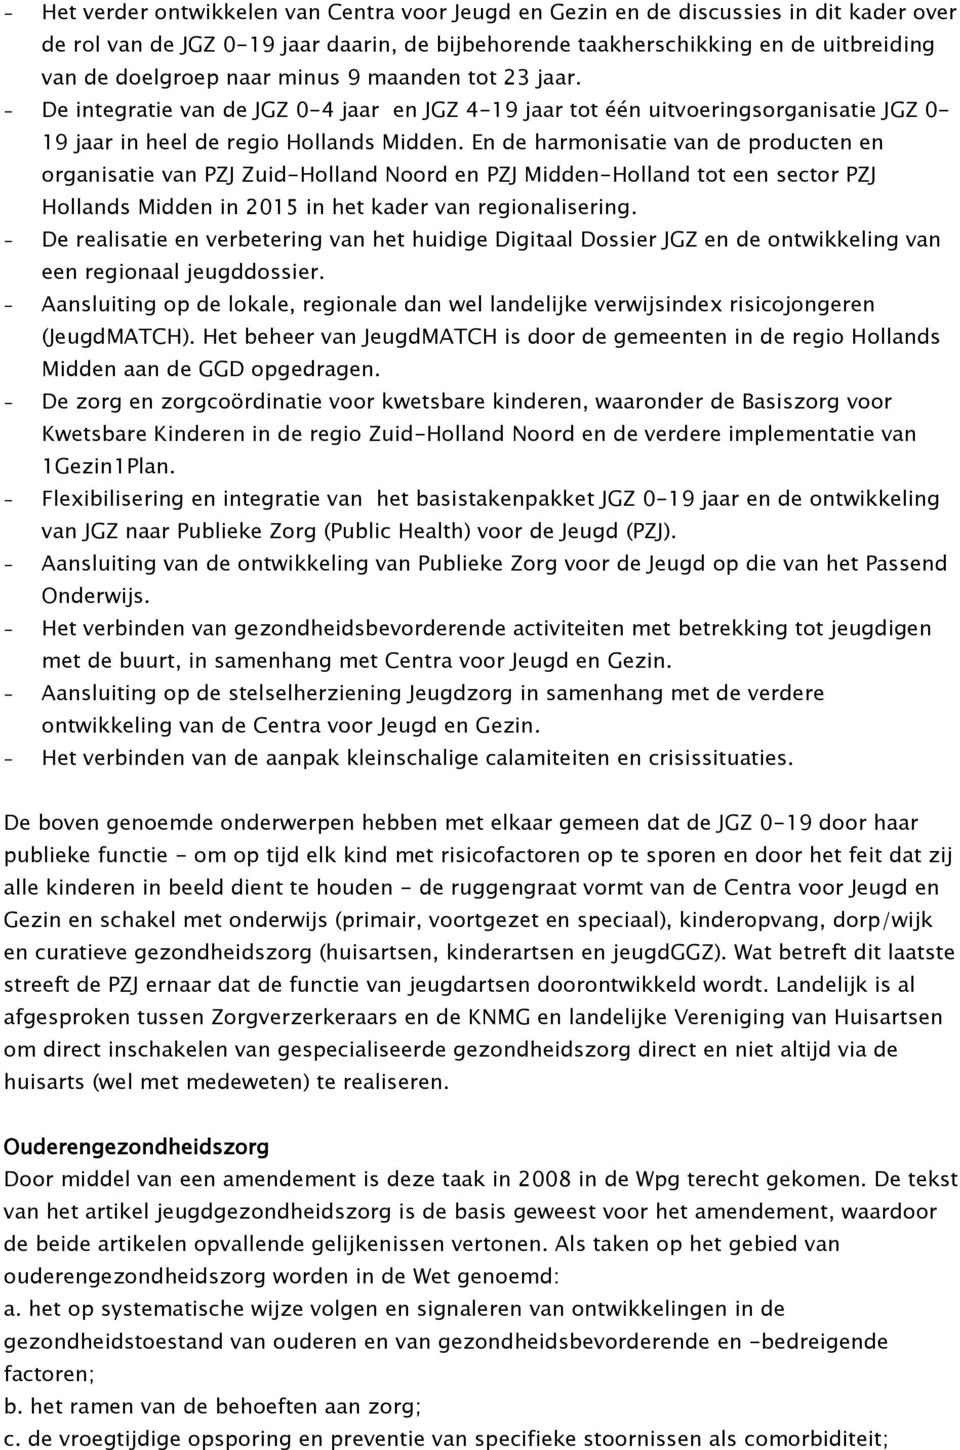 En de harmonisatie van de producten en organisatie van PZJ Zuid-Holland Noord en PZJ Midden-Holland tot een sector PZJ Hollands Midden in 2015 in het kader van regionalisering.